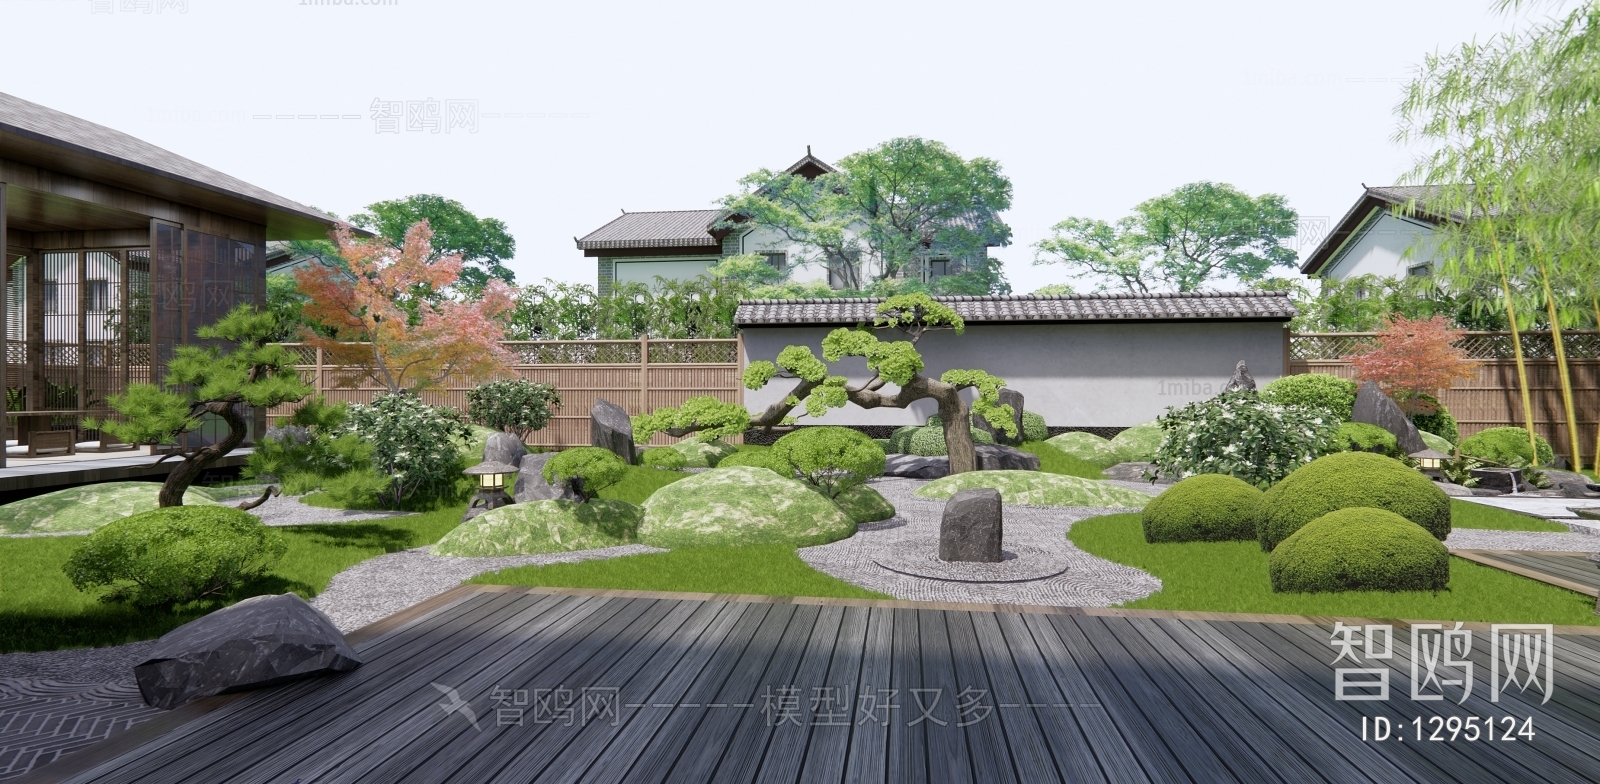 日式枯山石庭院花园